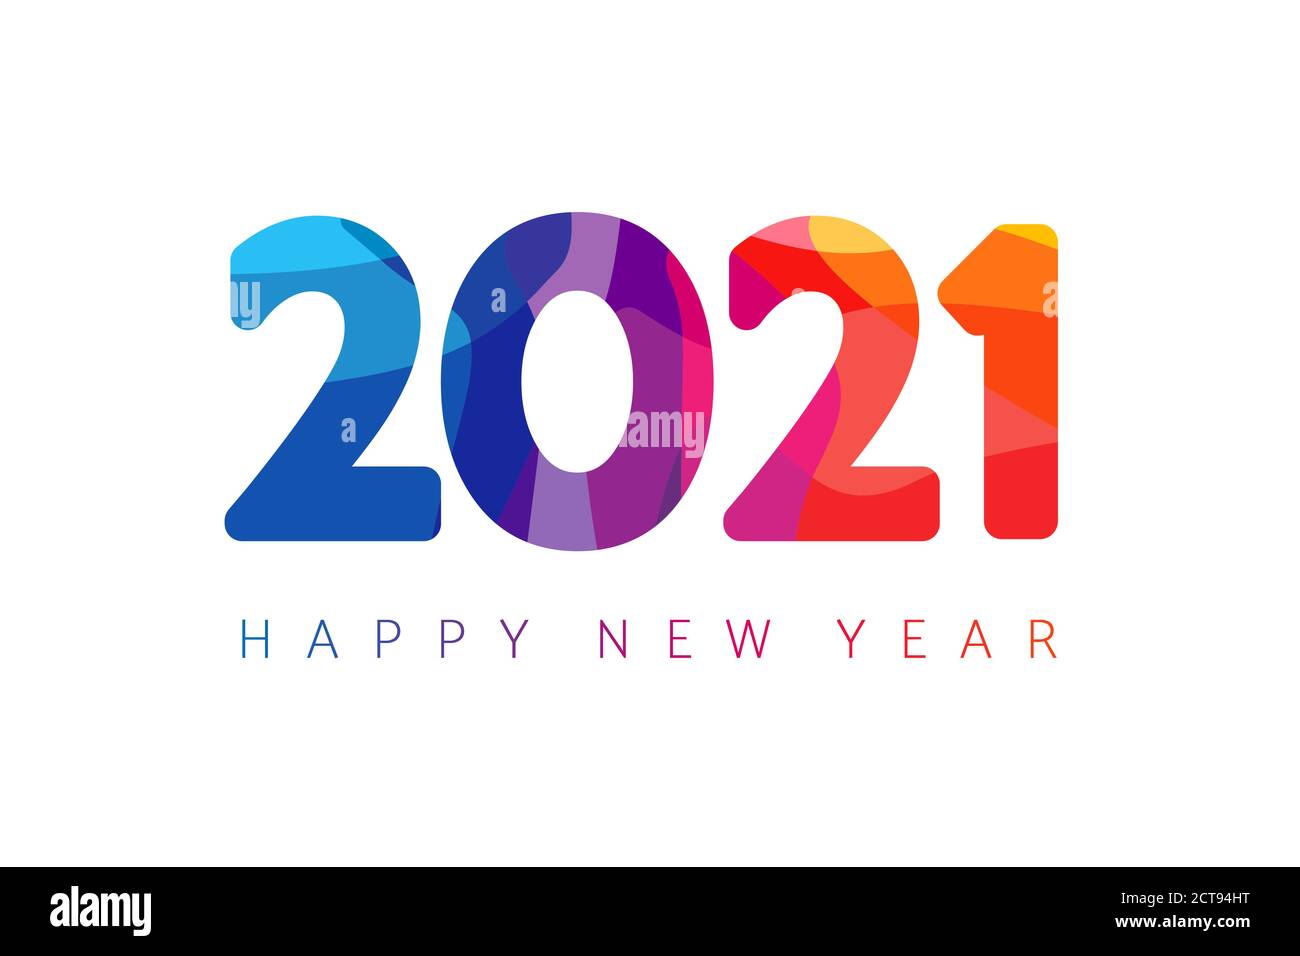 Joyeux nouvel an 2021 design de texte de logo de facette coloré. Couverture de l'agenda d'affaires pour 2021 avec souhaits. Modèle de conception de brochure, carte de Noël, bannière de vente Illustration de Vecteur